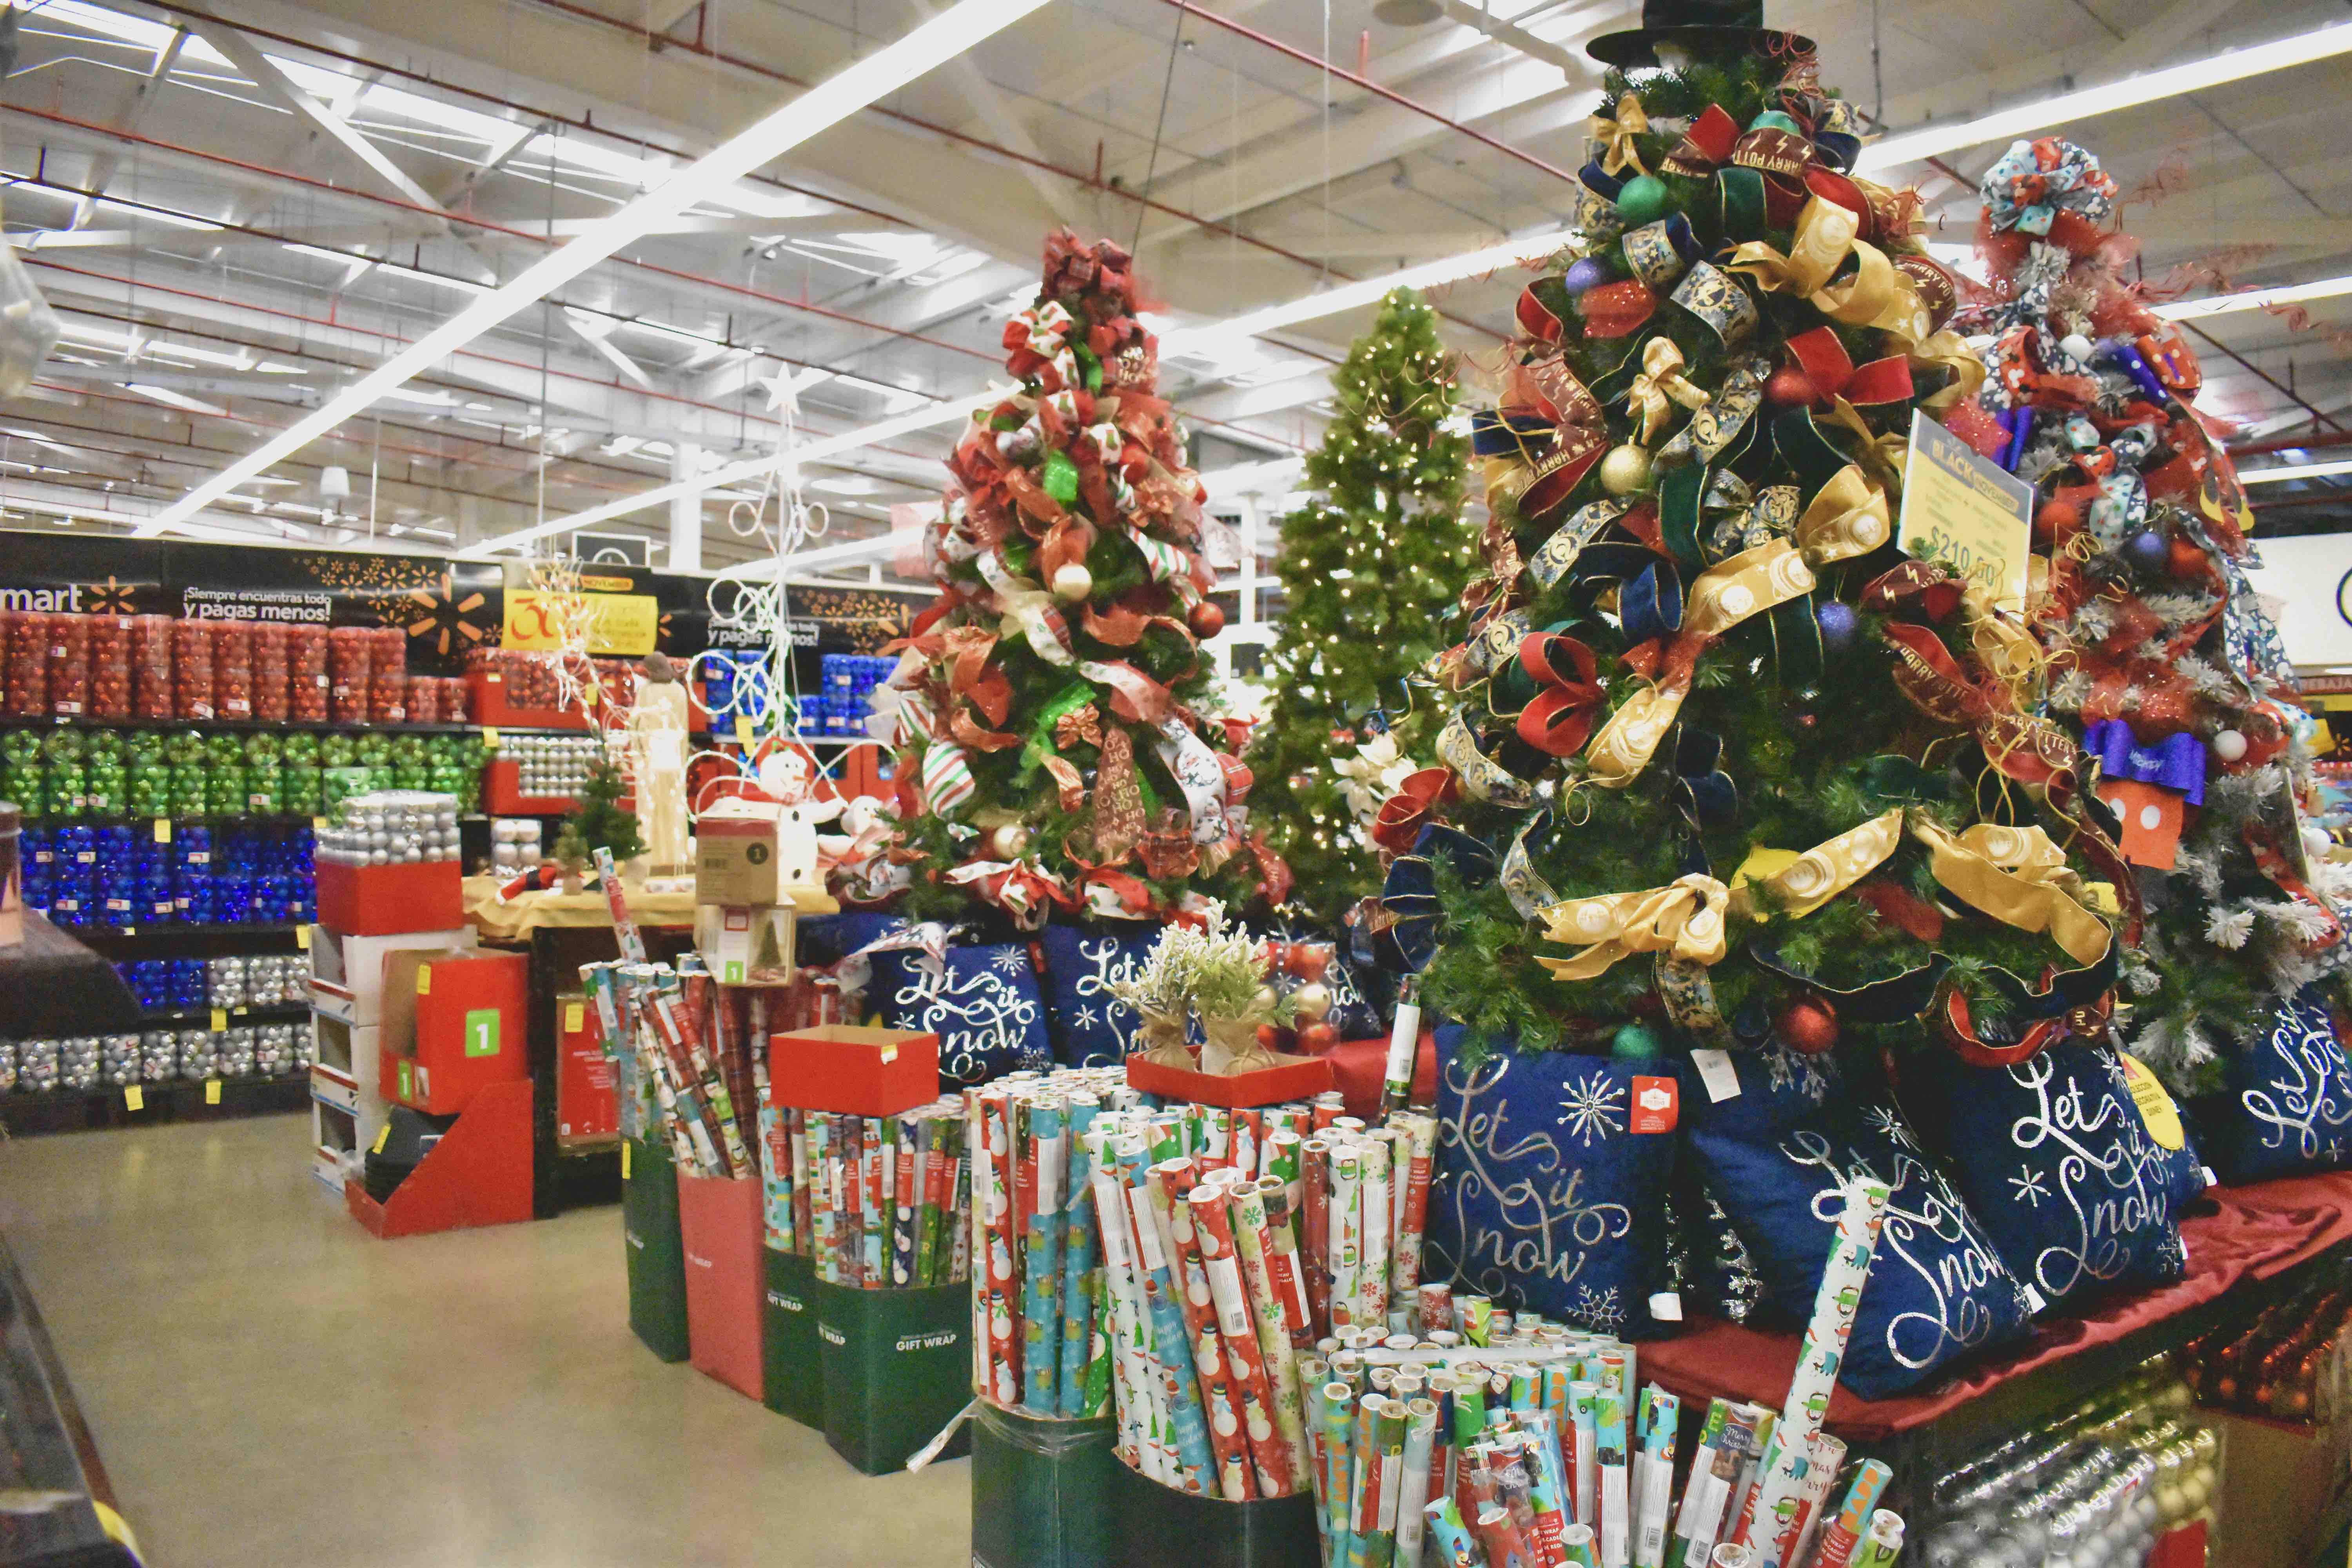 Oferta Imperfectas Navidades en Carrefour 